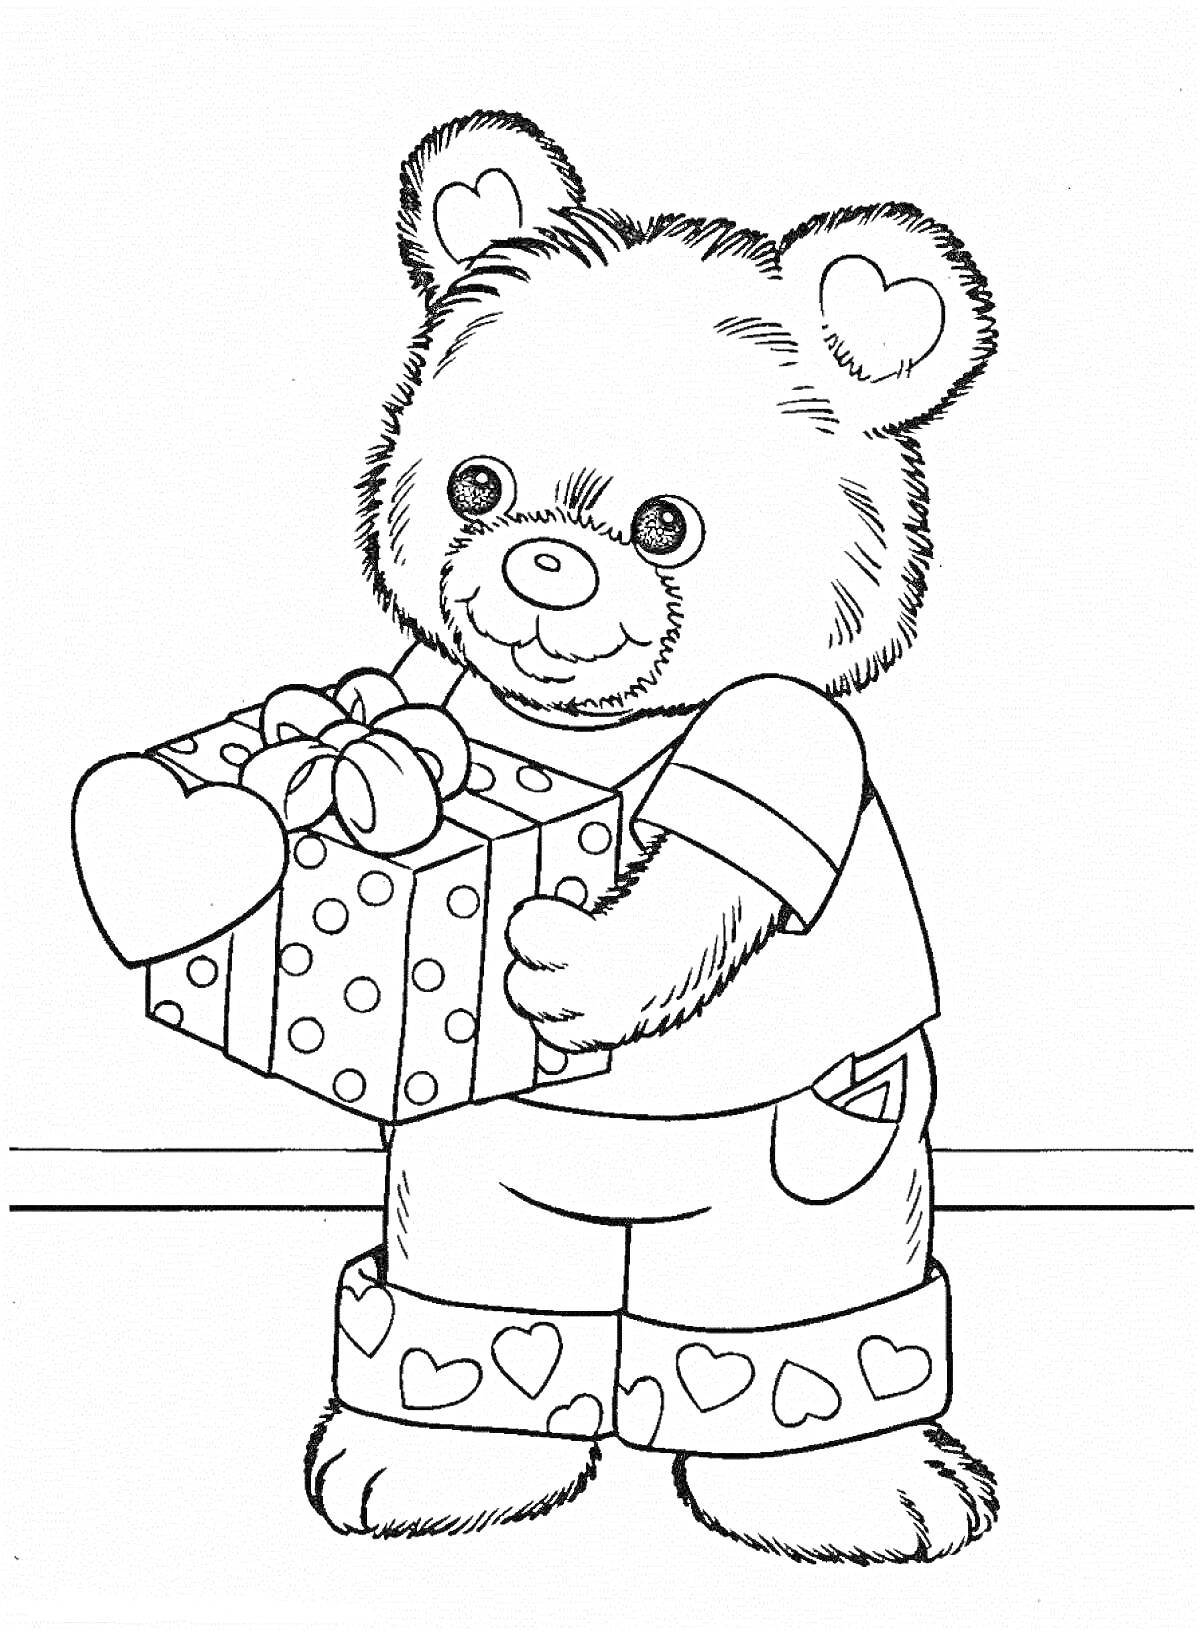 Медвежонок в штанах с сердечками держит подарочную коробку с бантом и сердечком